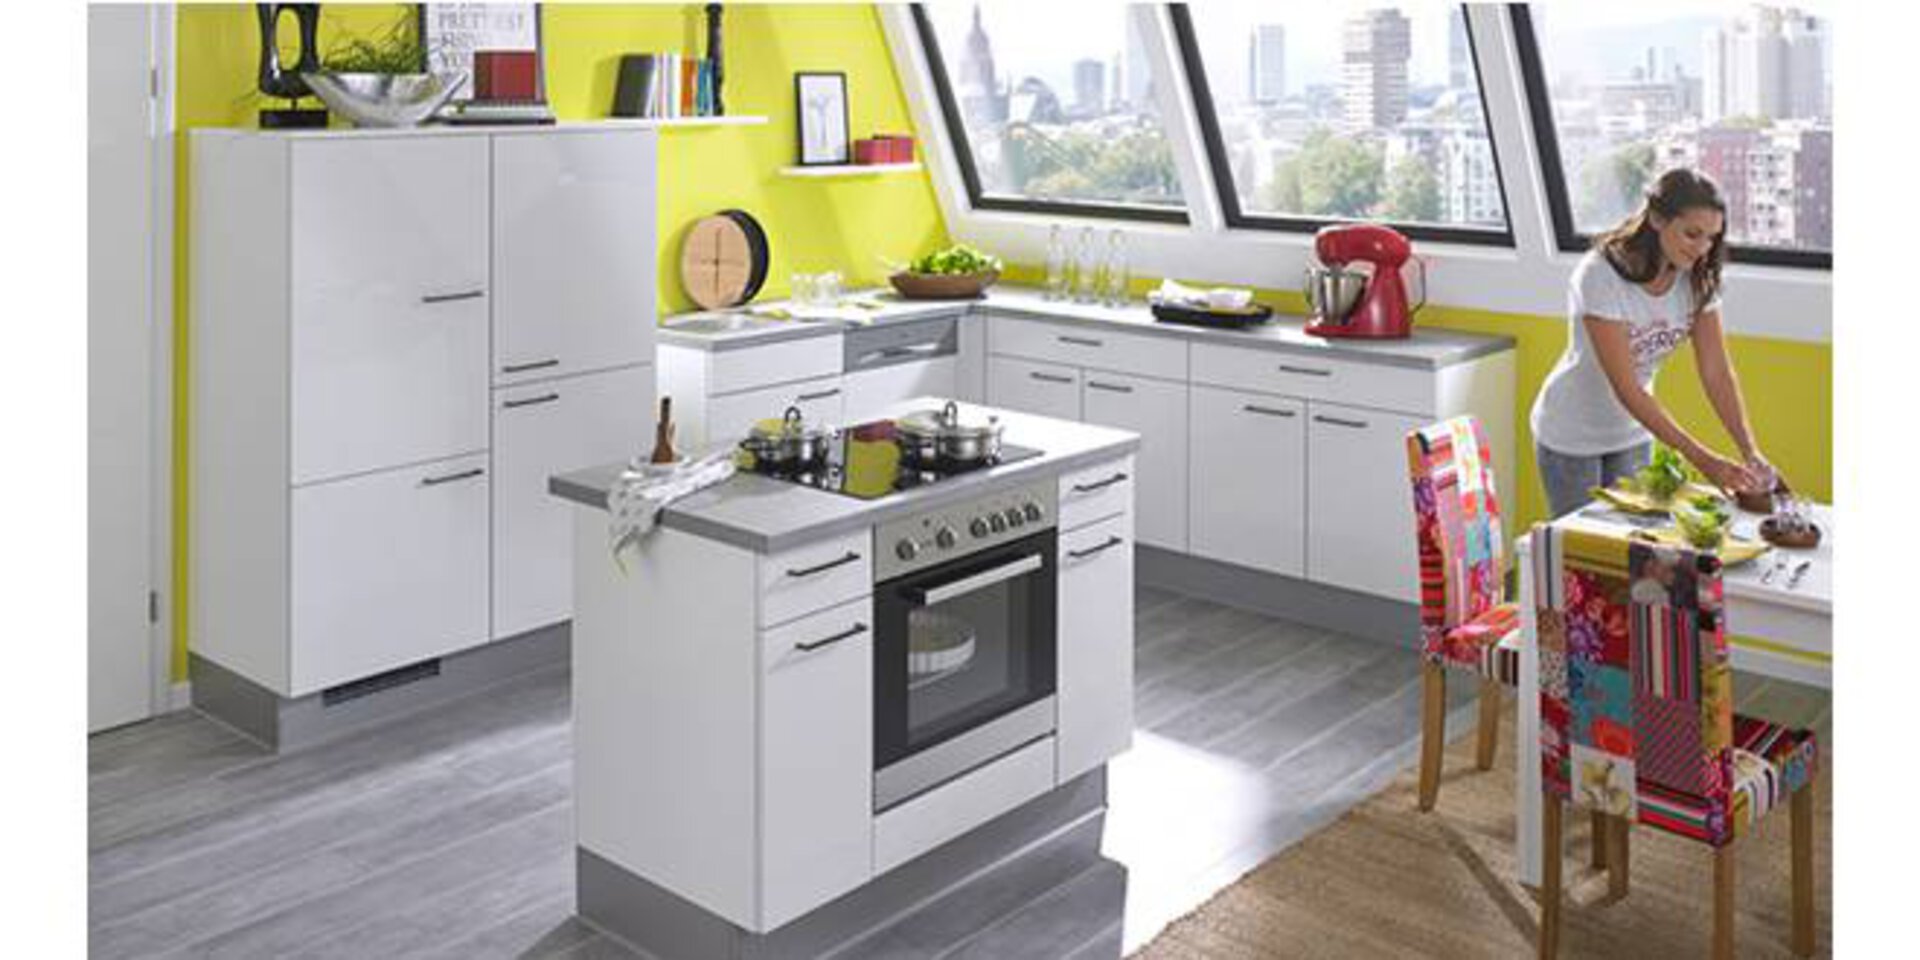 Kleine Kücheninsel mit eingebautem Backofen in einer Dachgeschosswohnung dient als Titelbild für Kompaktküchen.